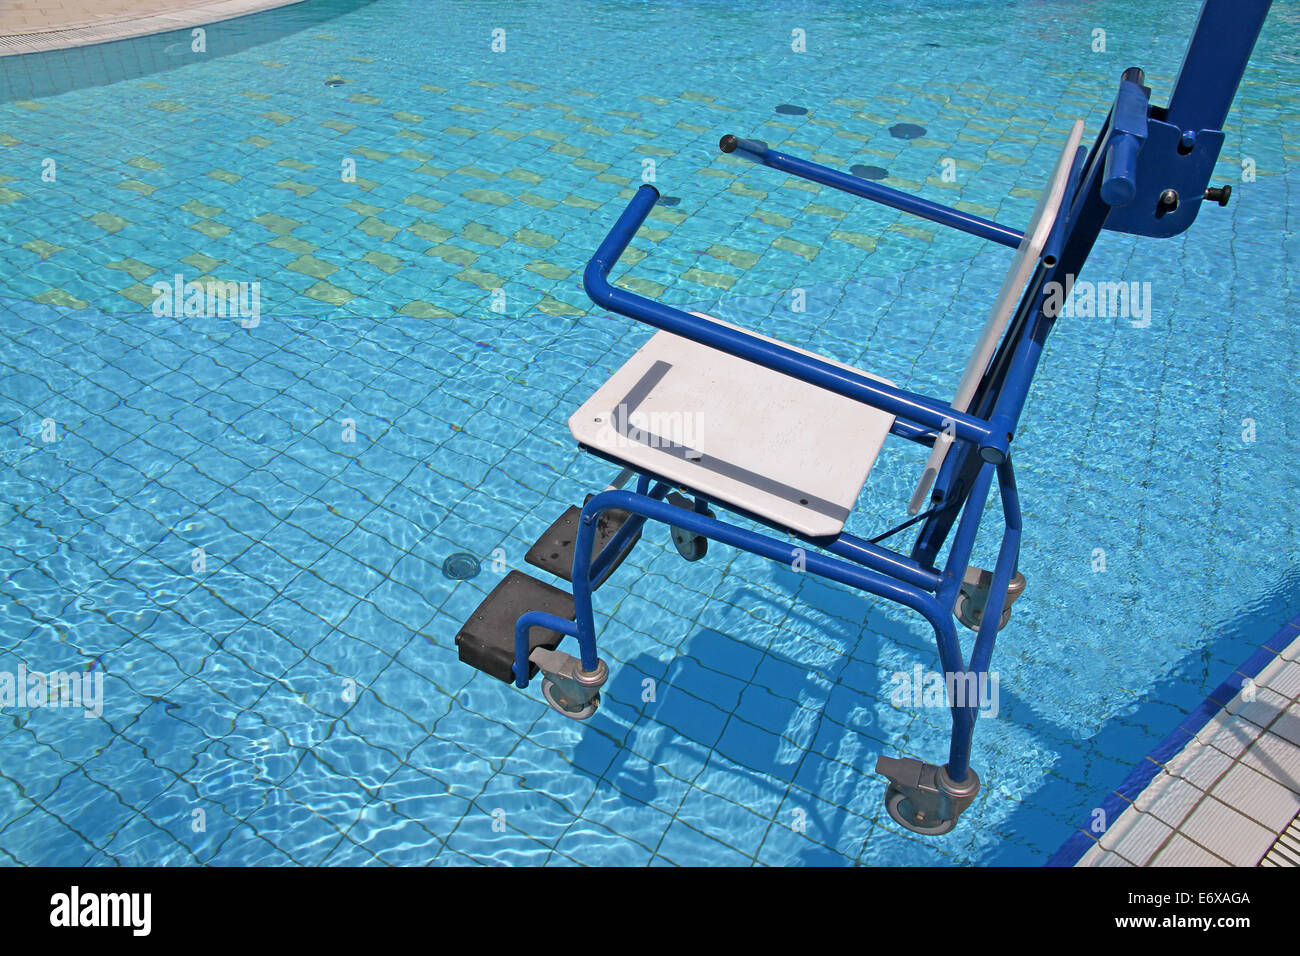 Carrozzella per disabili per uso in piscina Foto Stock